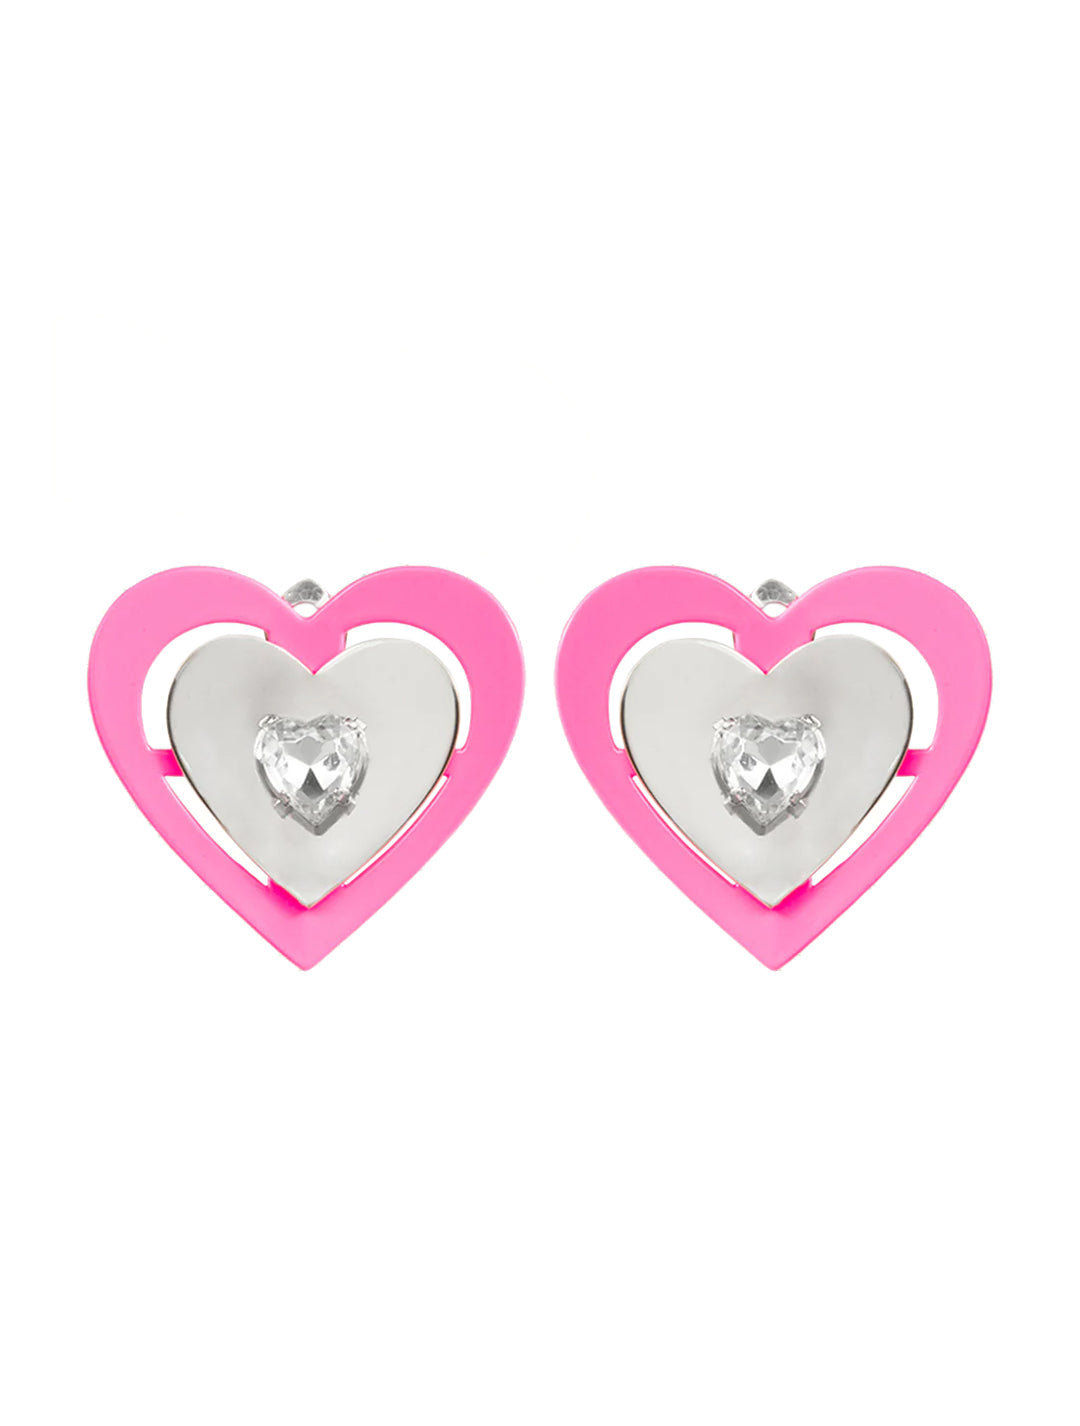 Safsafu Pink Neon Heart Earrings